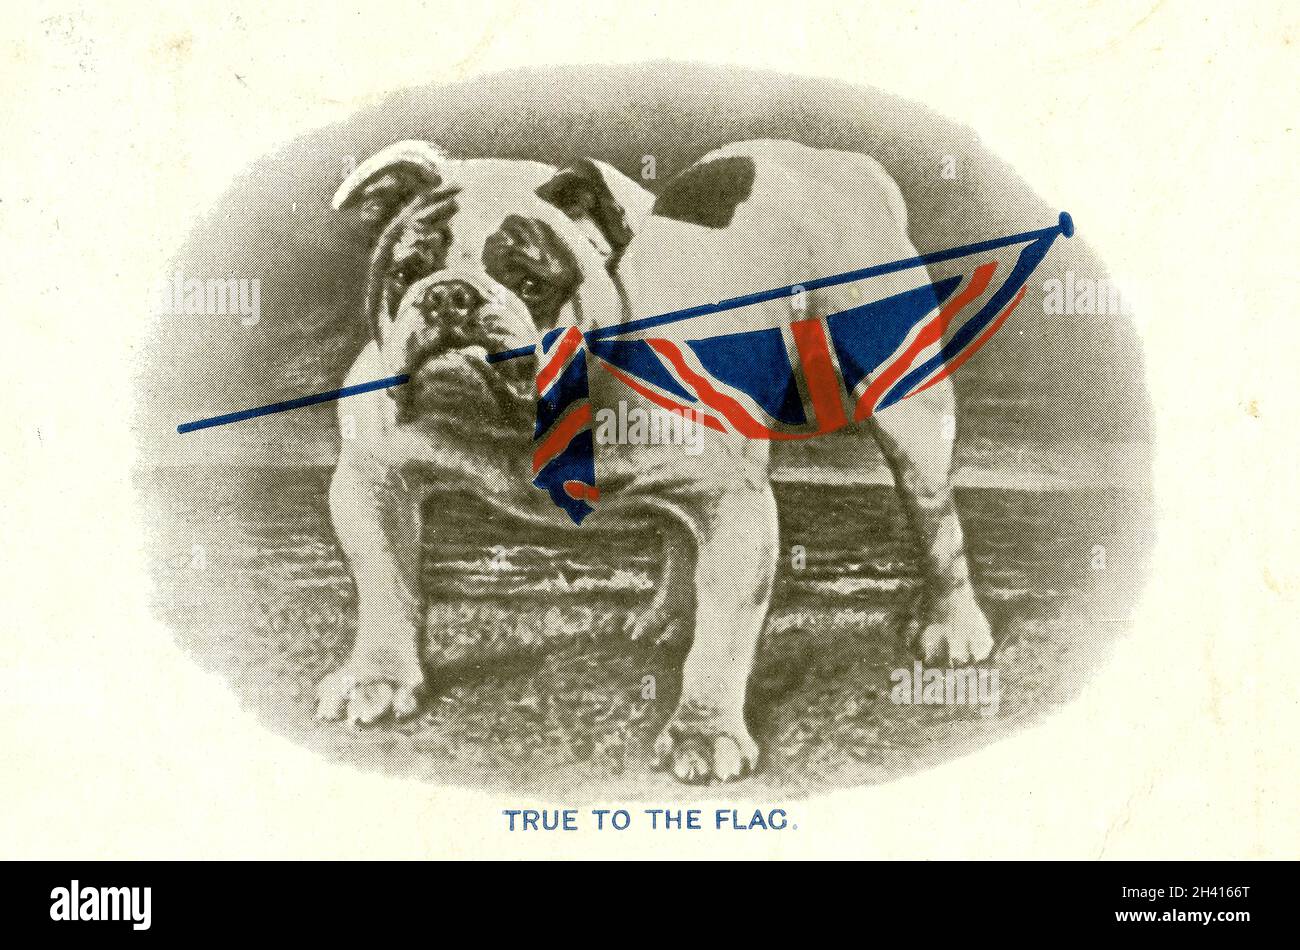 Carte postale originale de l'époque de la première Guerre mondiale de boudogue tenant un drapeau de l'Union Jack, fidèle au drapeau, citation de Tennyson les Britanniques tiennent votre propre, par C.W.Faulkner & Co.Ltd London série 1458, publiée le 19 octobre 1914 Banque D'Images